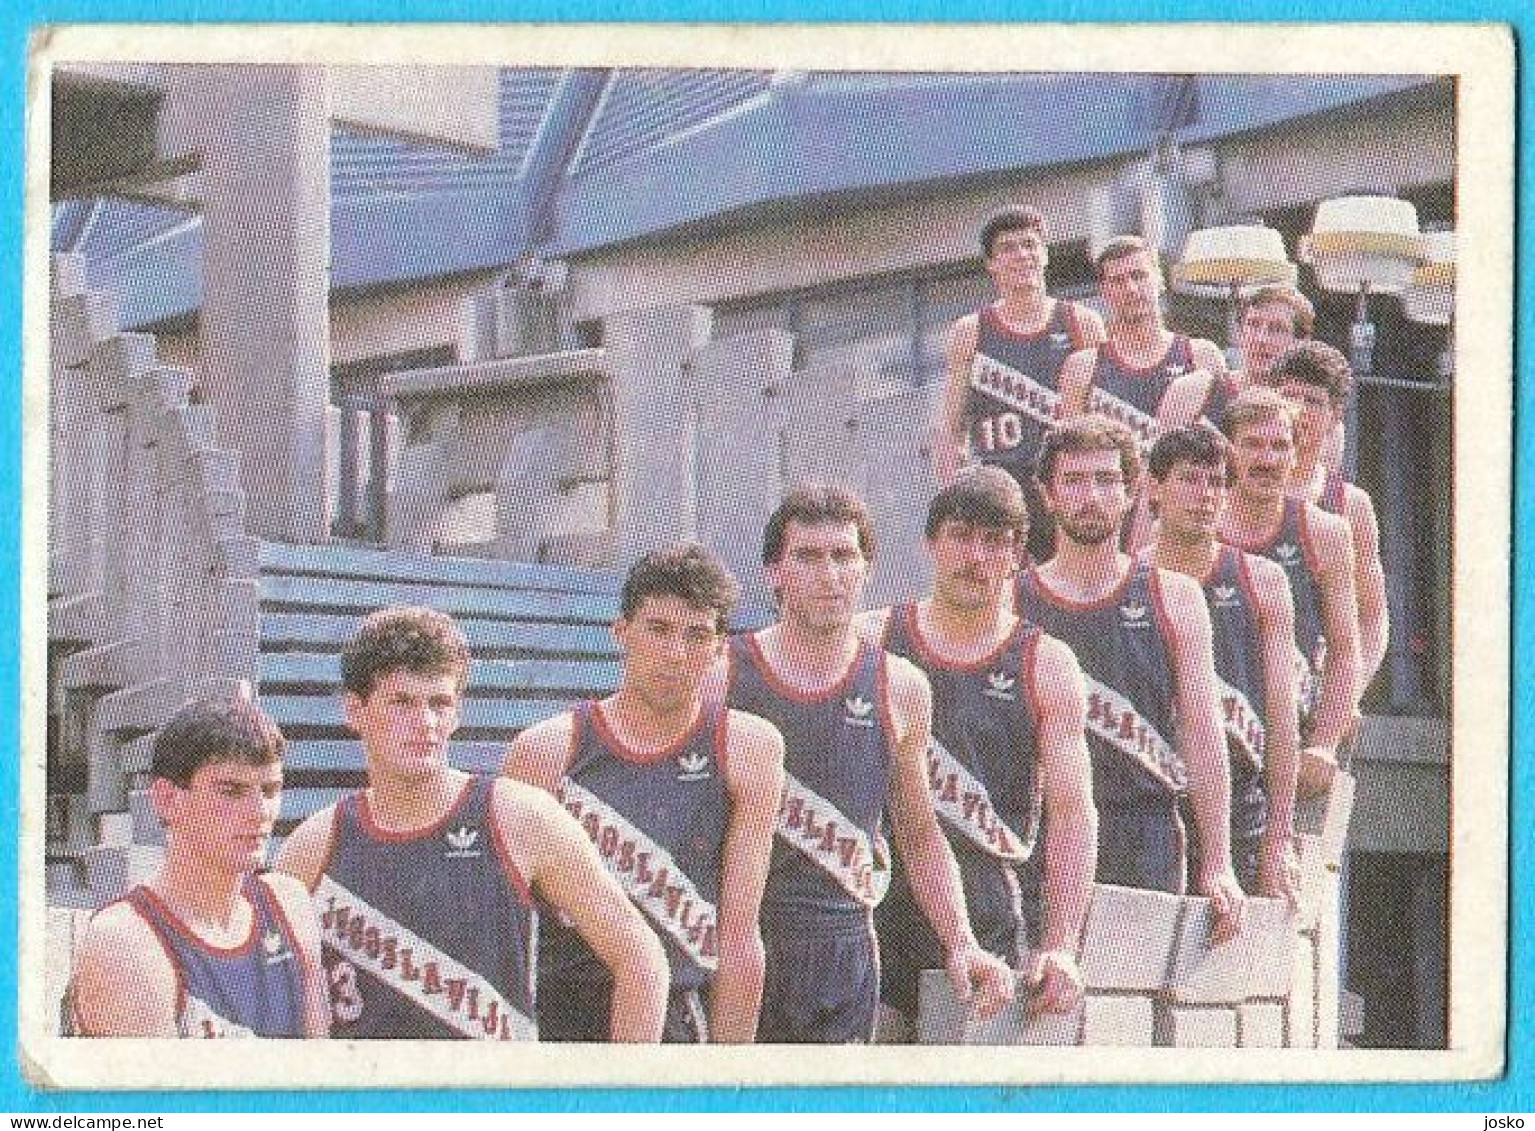 YUGOSLAV BASKETBALL TEAM - Vintage Basketball Card 1980s * Drazen Petrovic Stojko Vrankovic Drazen Dalipagic F. Arapovic - Pre-1980